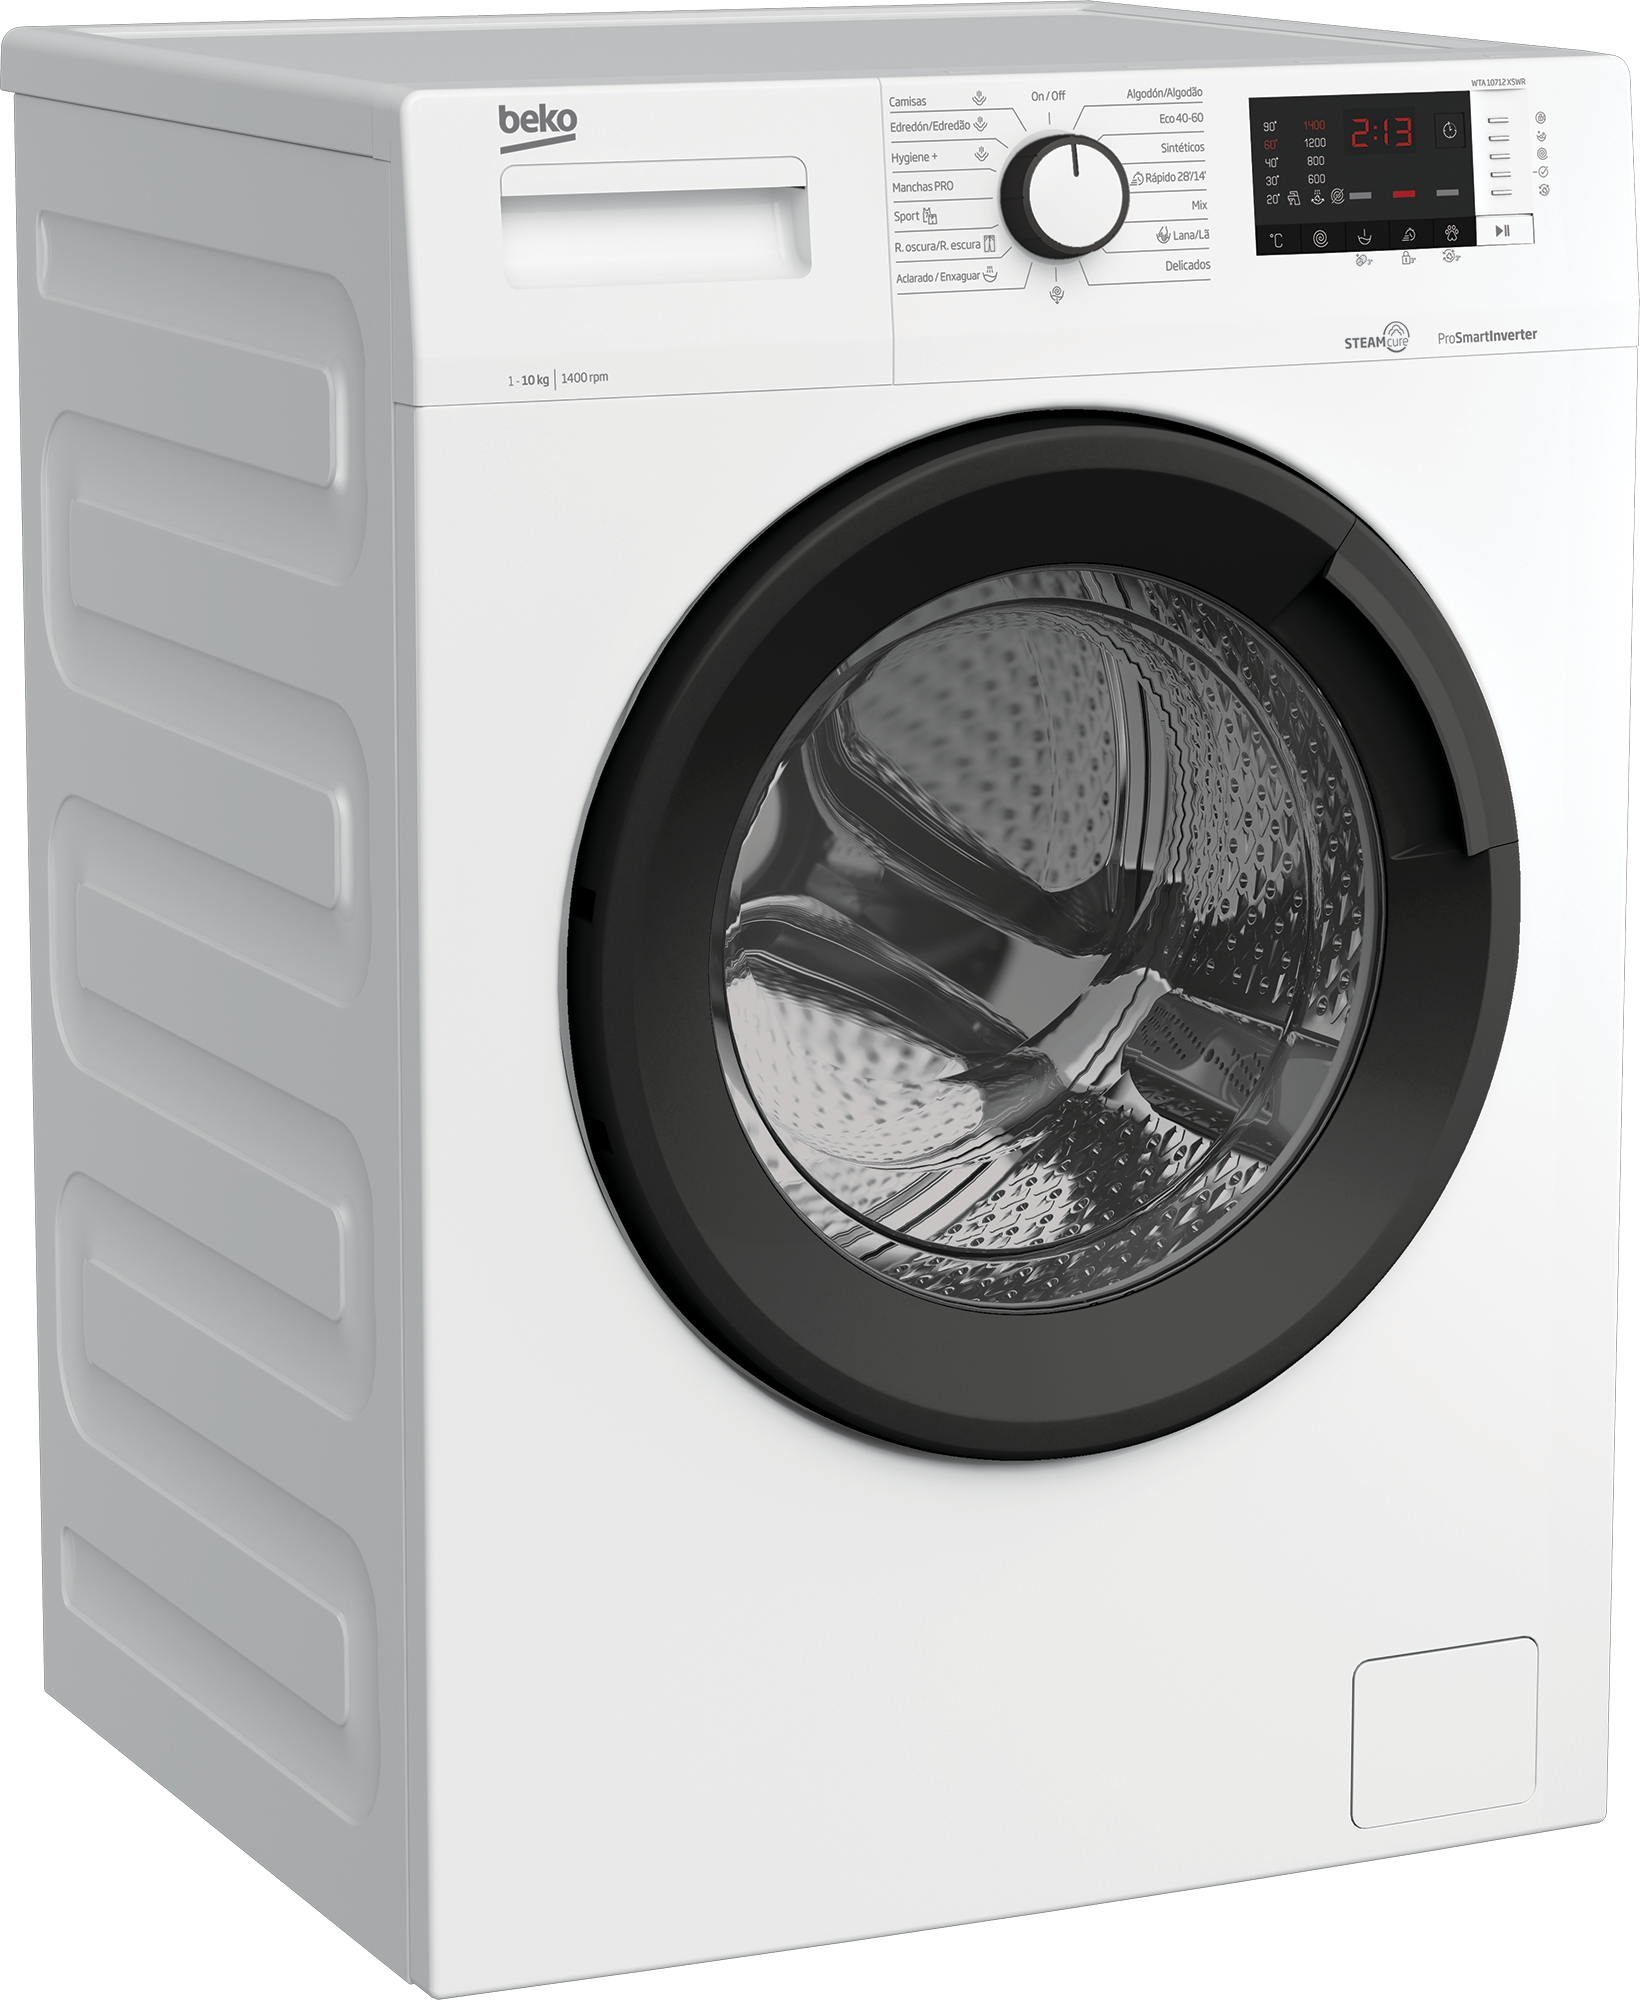 Pascual Martí Electrodomésticos - Una lavadora completísima por 259 euros  en Pascual Martí. ✓ 7 kg con 1200 rpm ✓ Inicio diferido 3-6-9 h ✓ Cajón  detergente Flexidose ✓ tambor suave ✓ Clase A+++